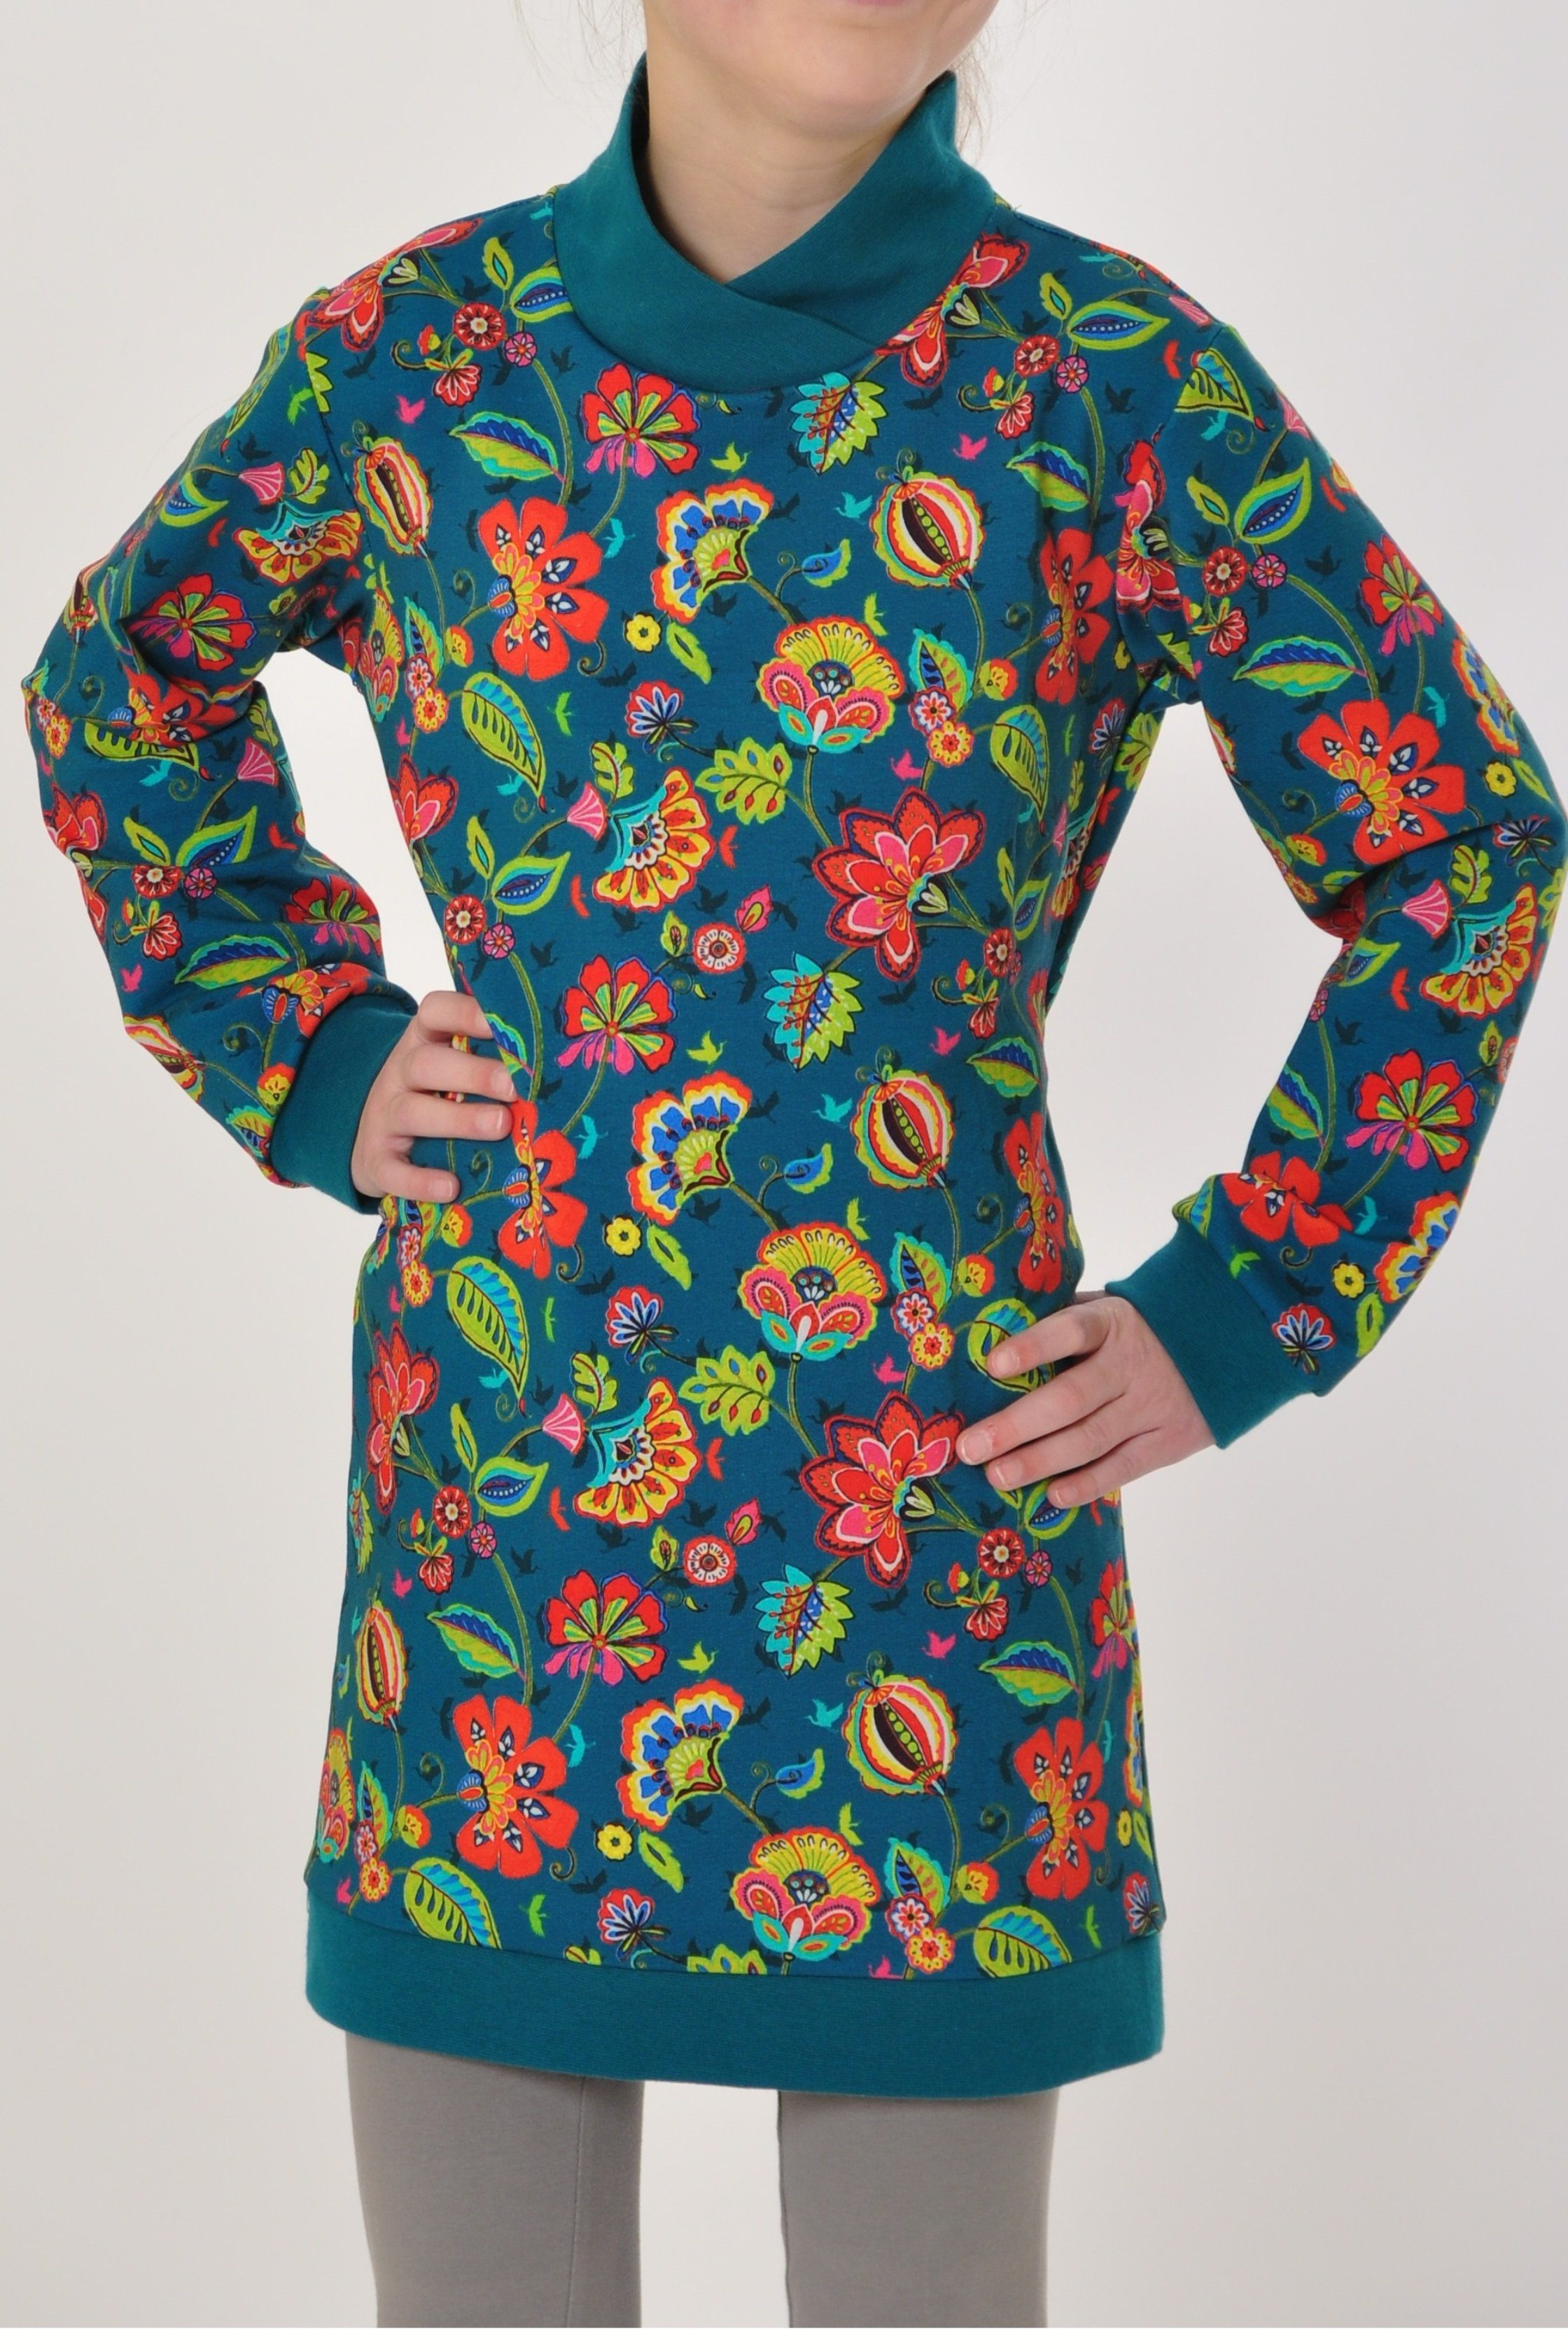 coolismo Sweatkleid Sweatshirt coole Mädchen Produktion Kleid mit europäische Blumen für Motivdruck petrol